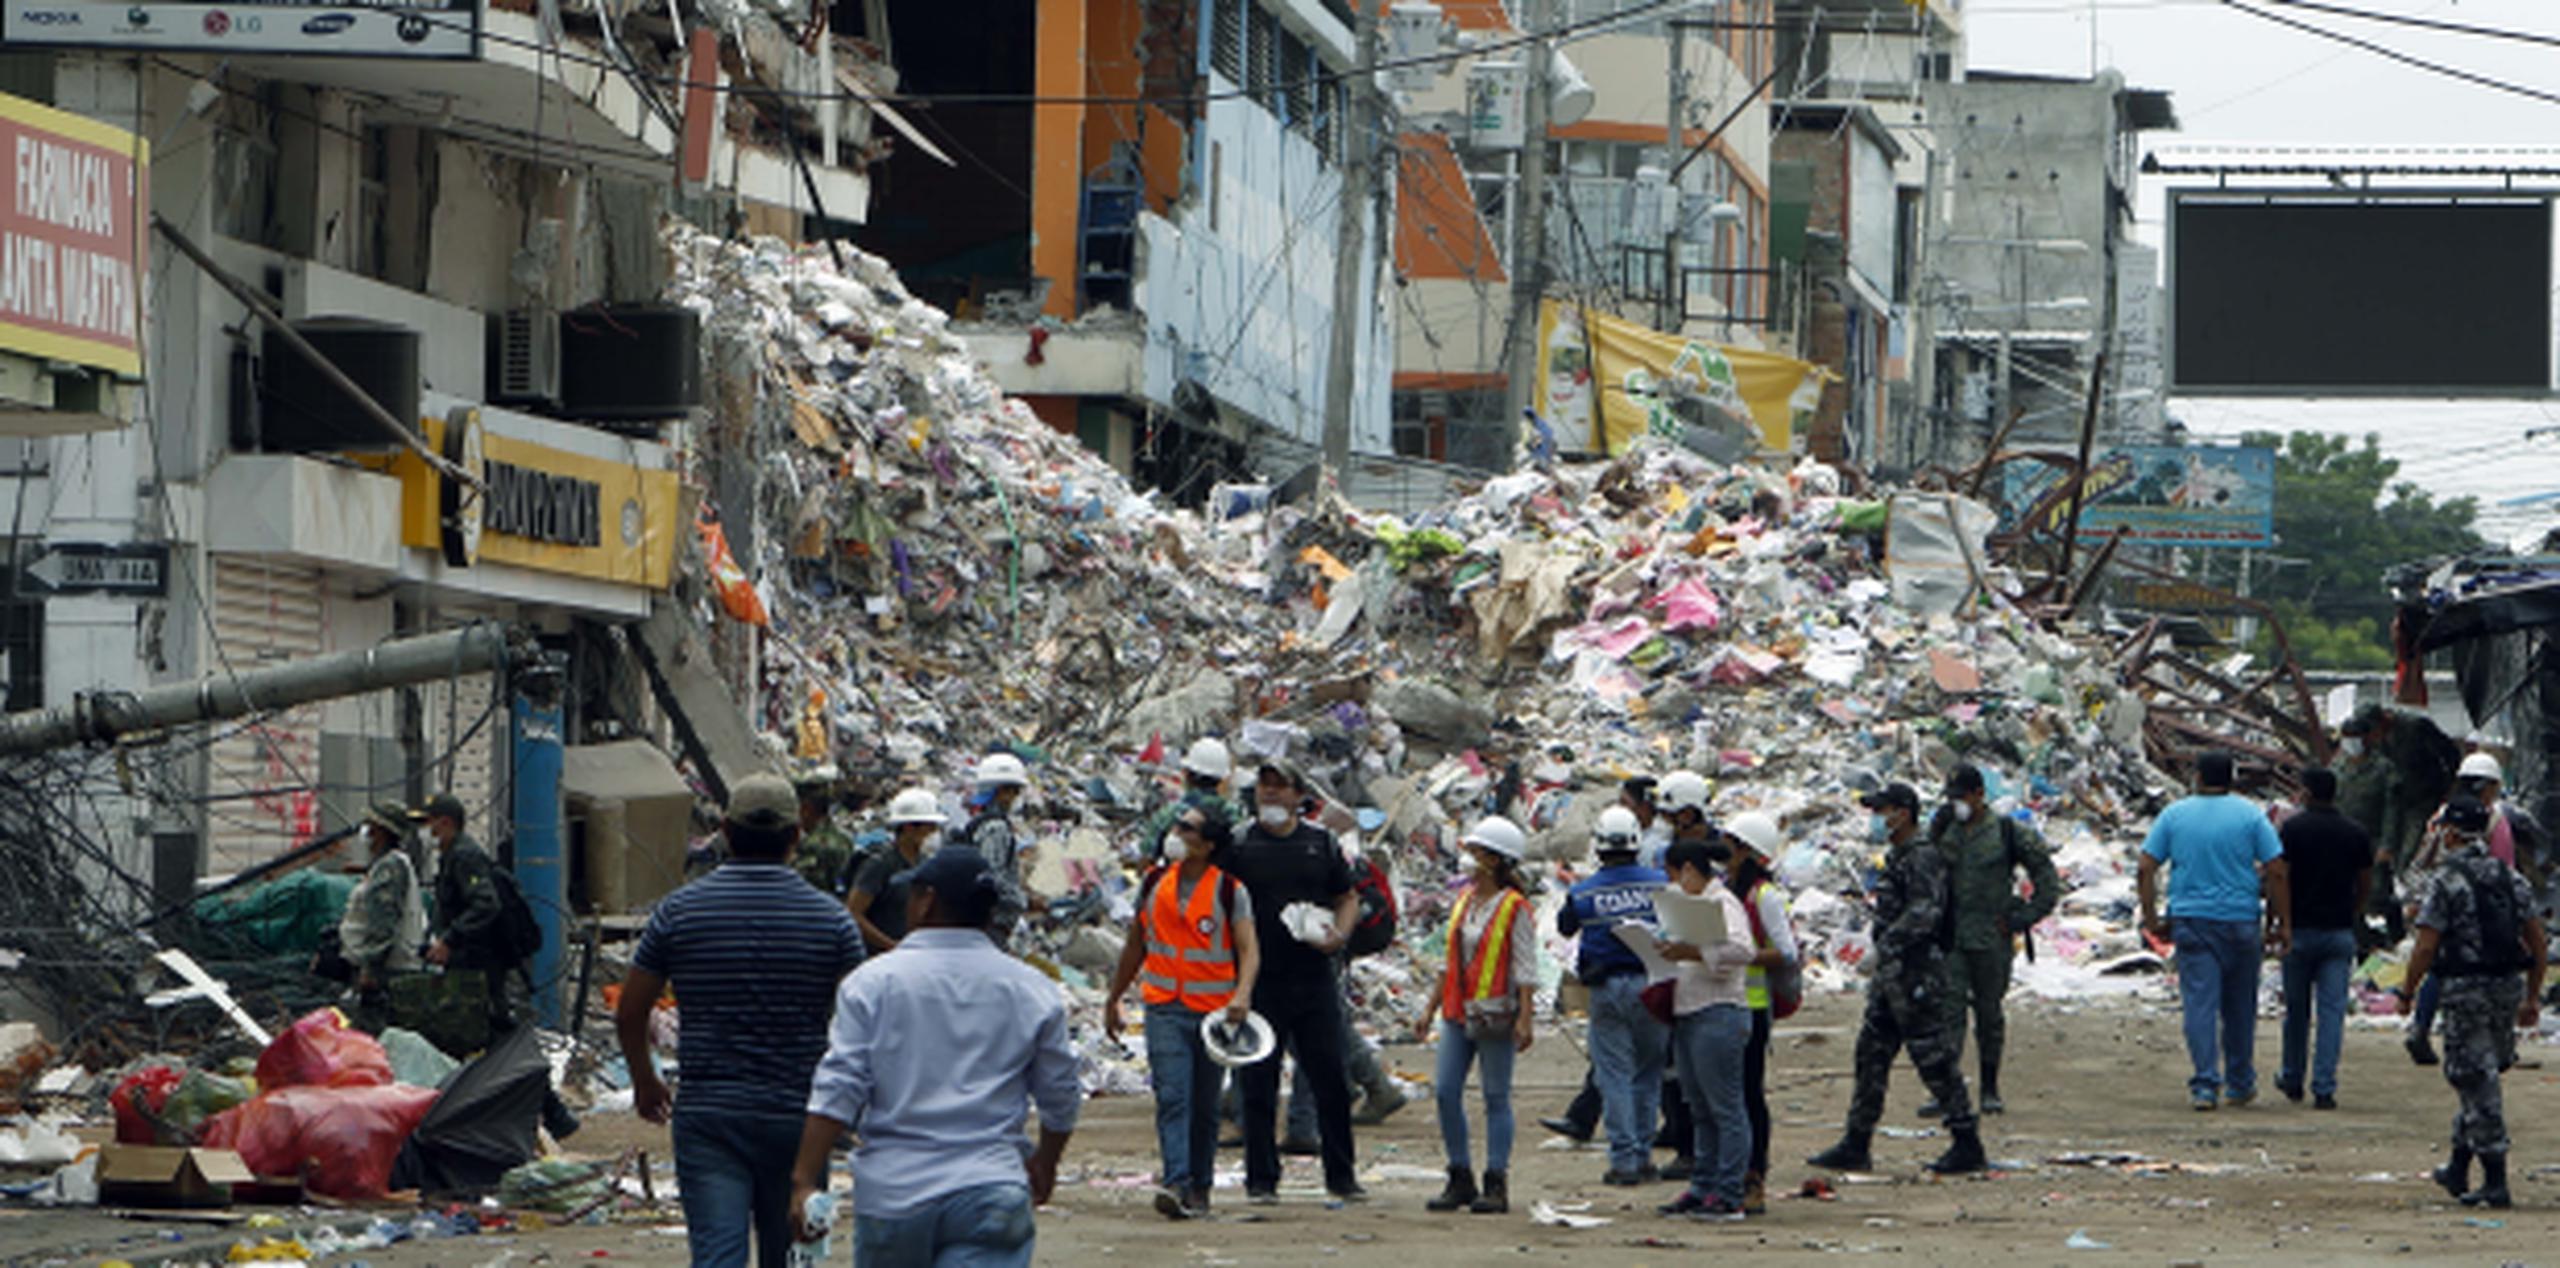 La reconstrucción de las zonas afectadas por el terremoto costará 3,344 millones de dólares. (Archivo)